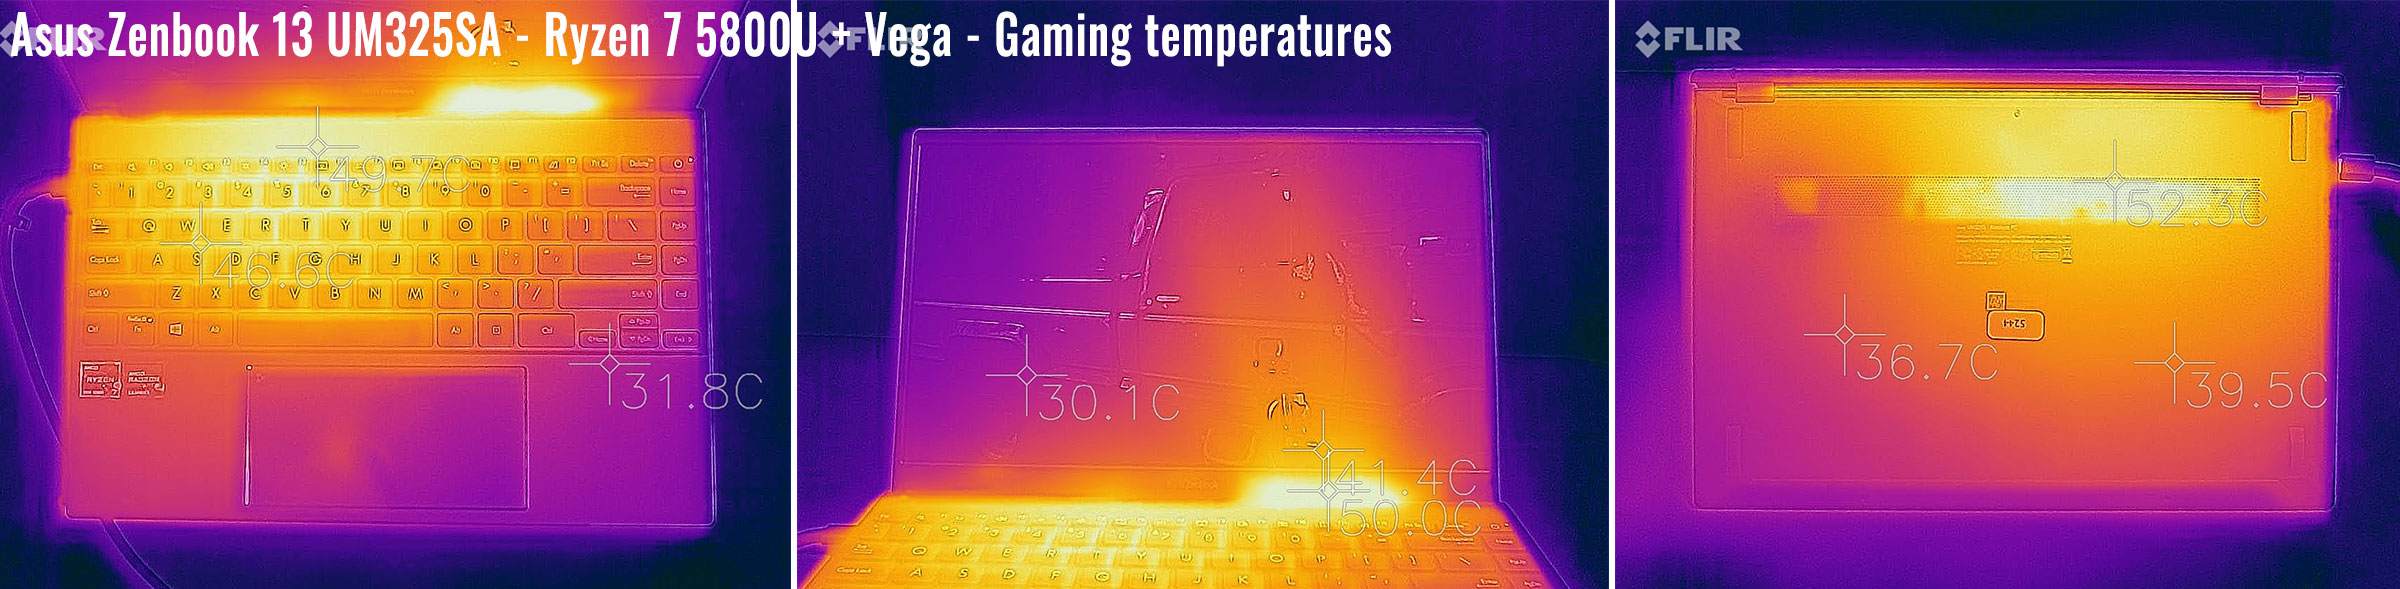 temperatures zenbookum325sa gaming